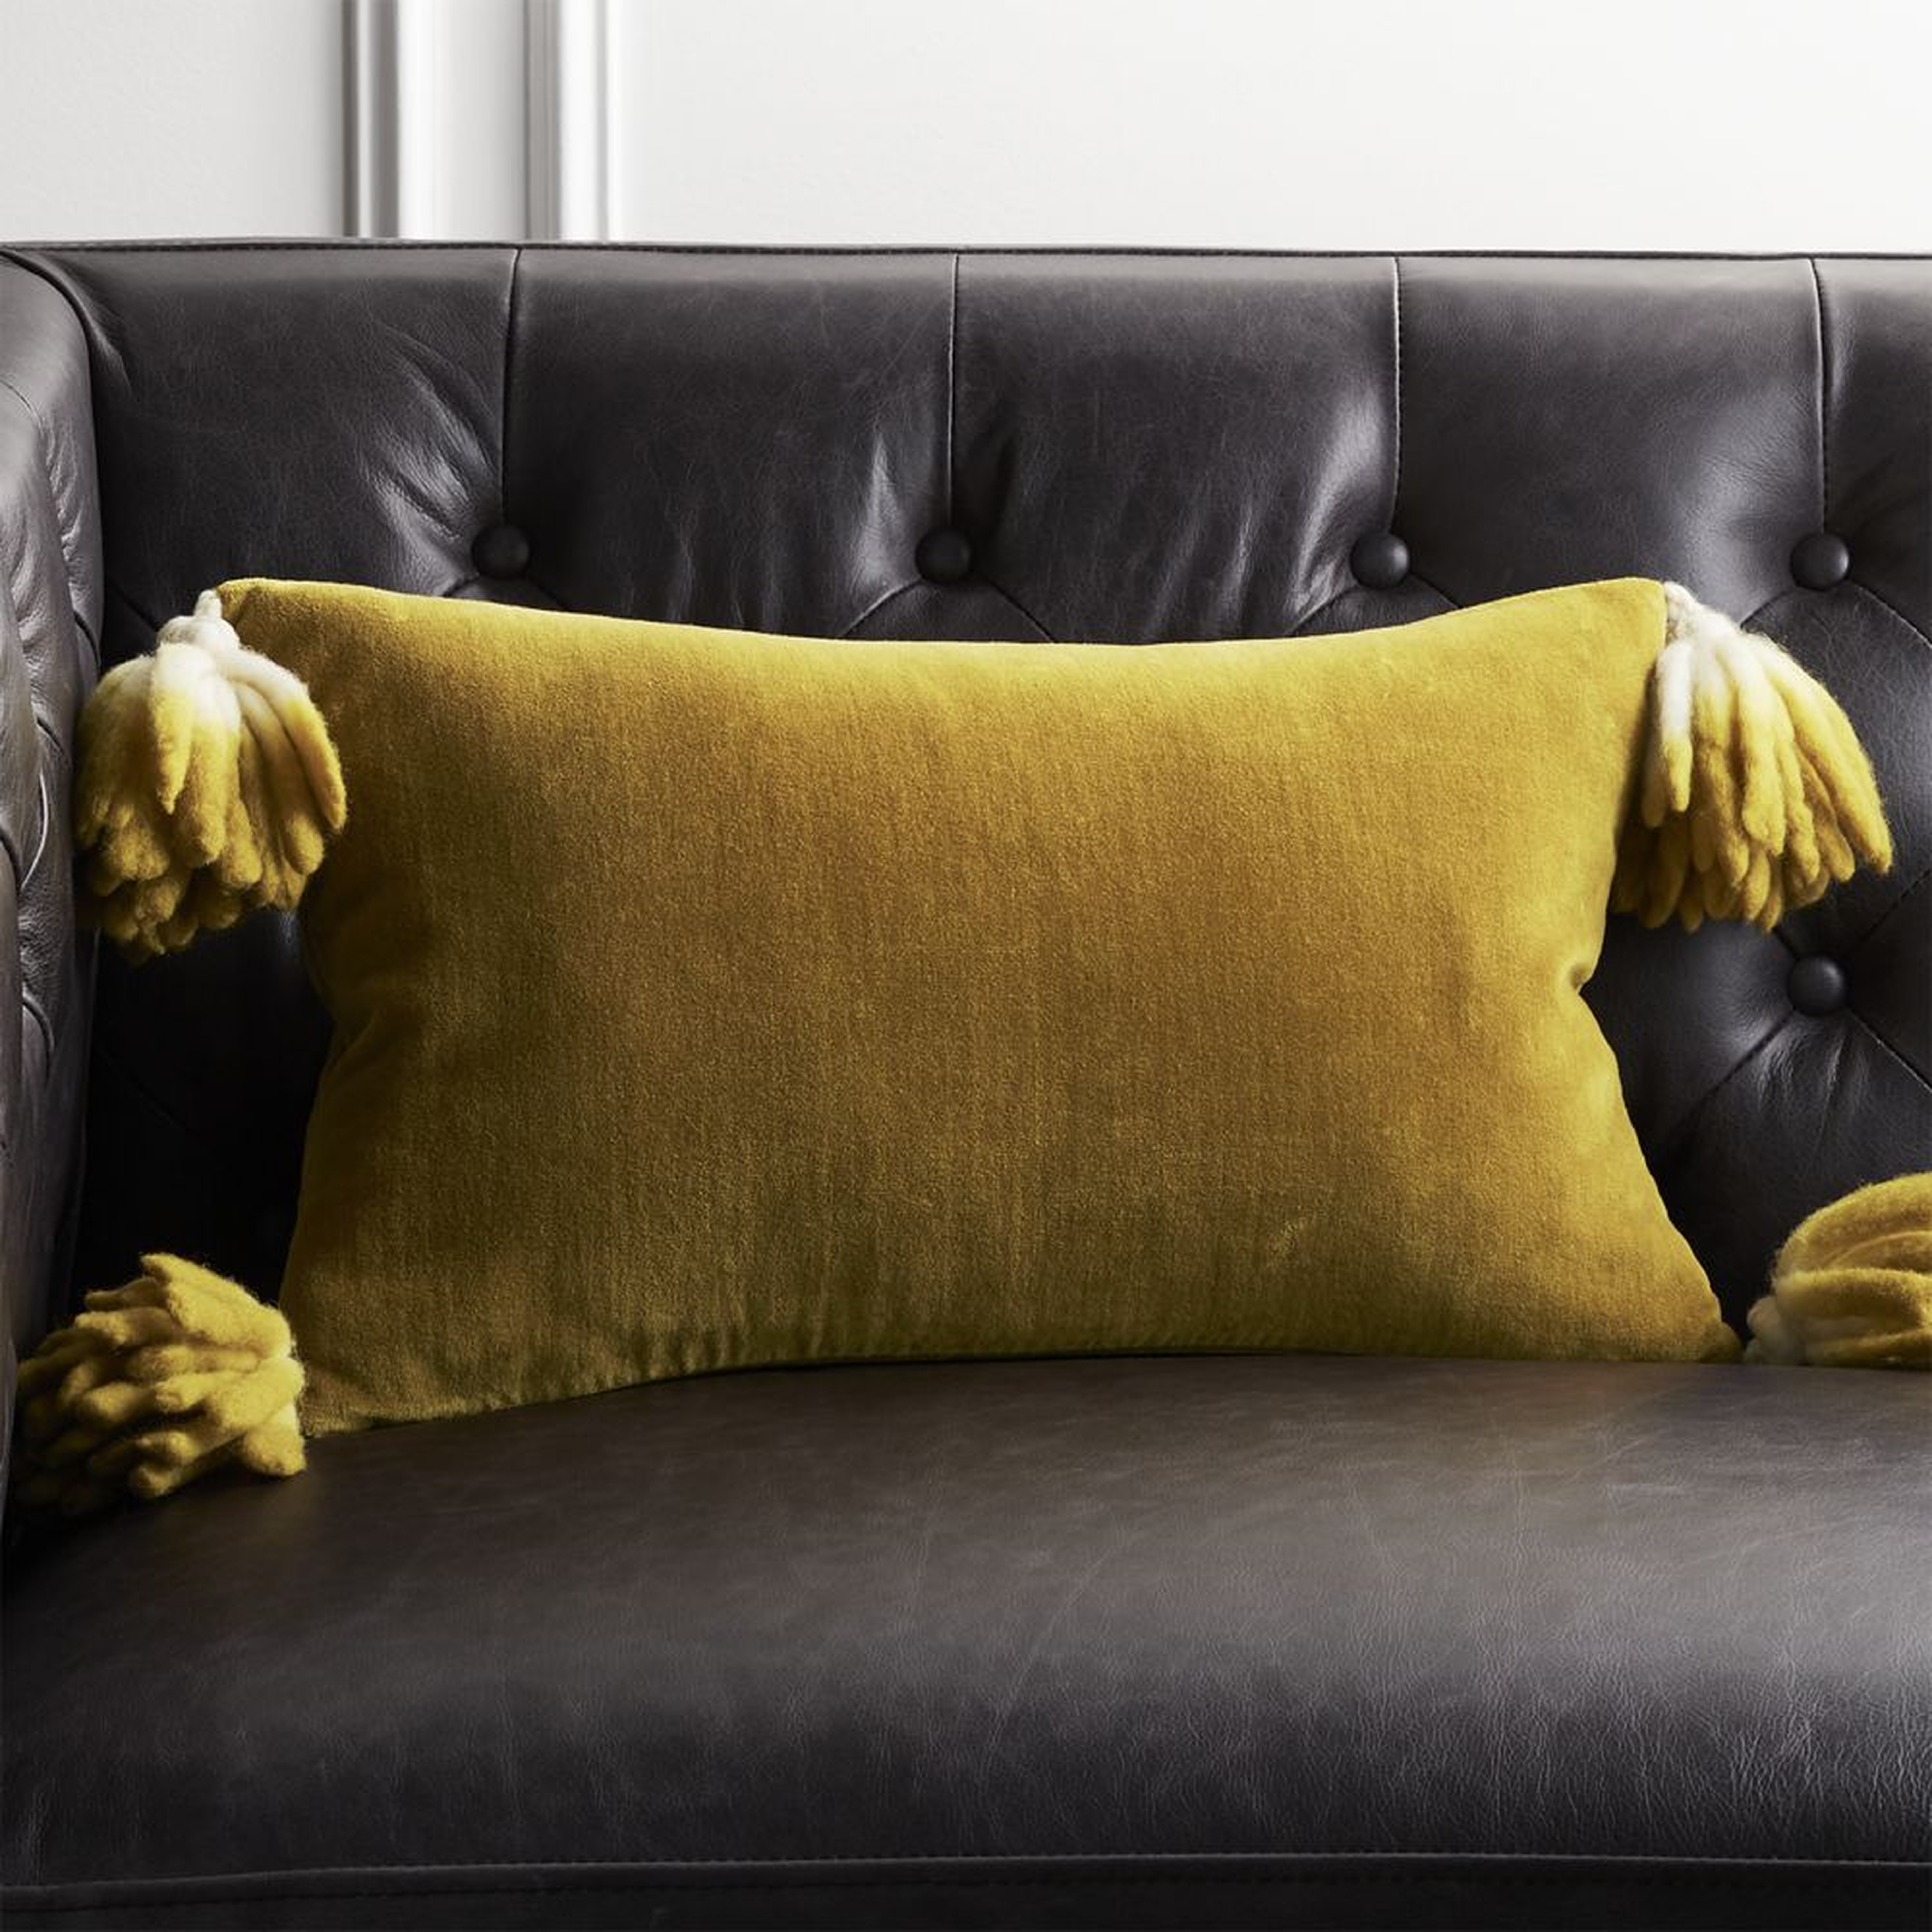 18"x12" Bia Tassel Mustard Velvet Pillow with Down-Alternative Insert - CB2